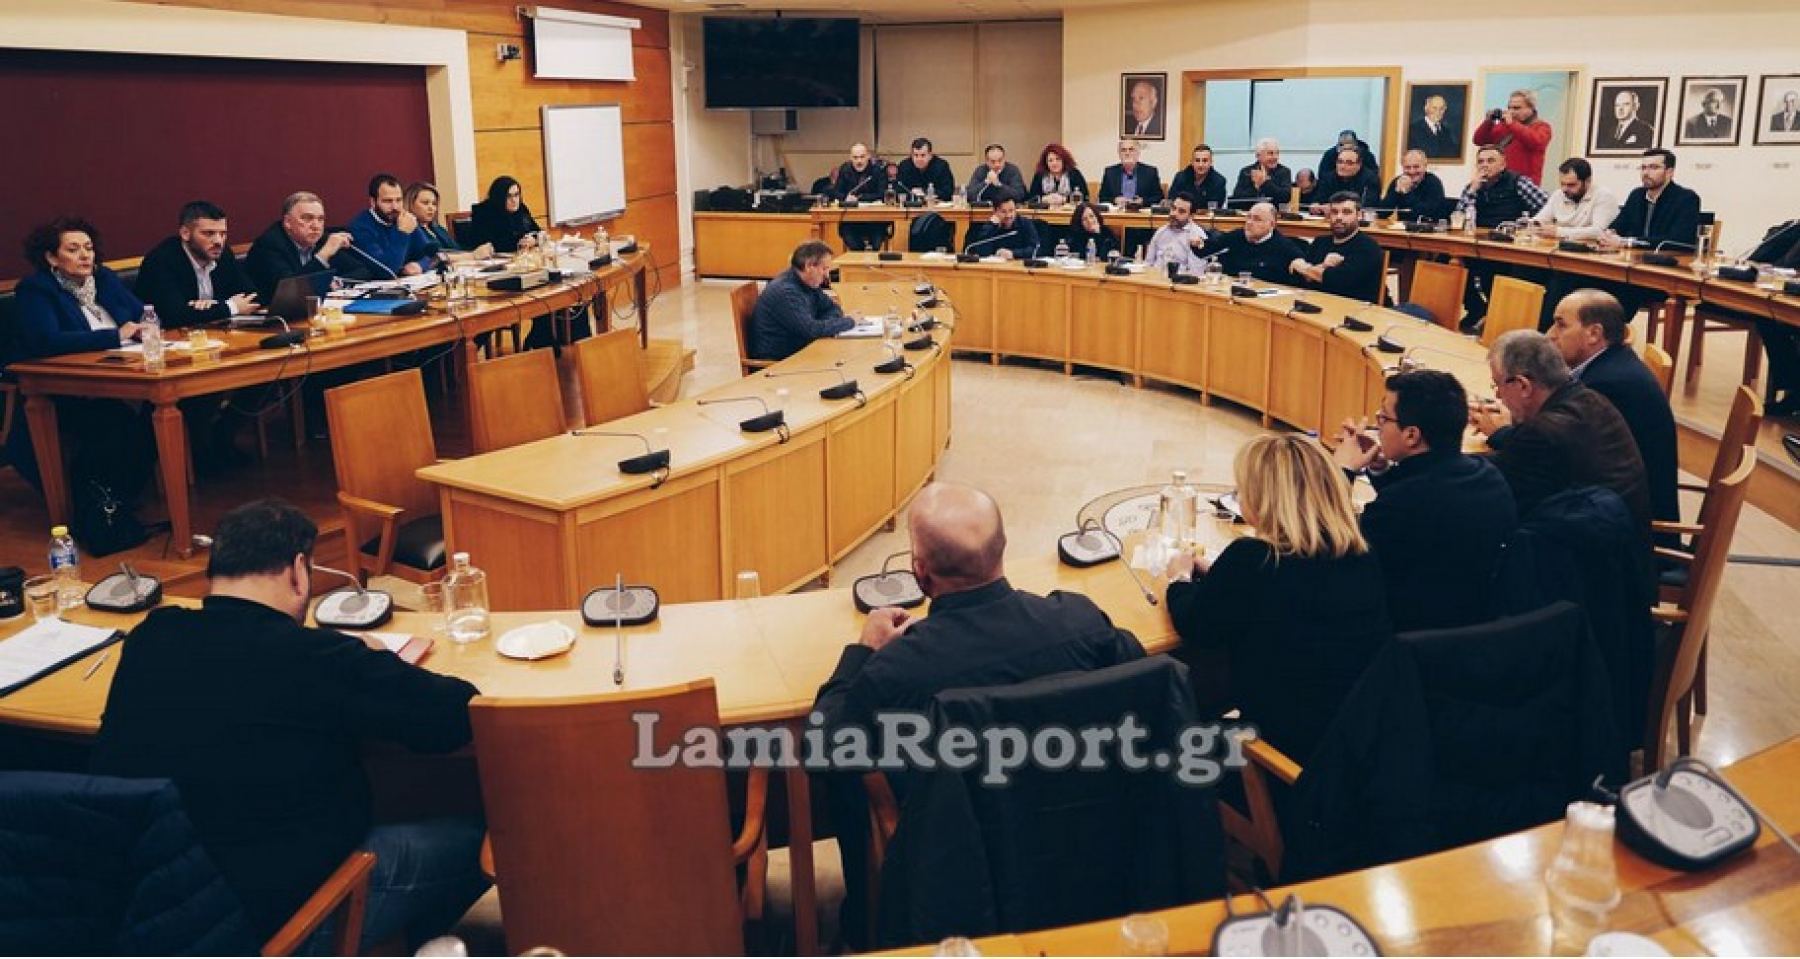 Τι είπε ο Δήμαρχος Λαμιέων για το θέμα των προσφύγων στη Μαυρομαντήλα